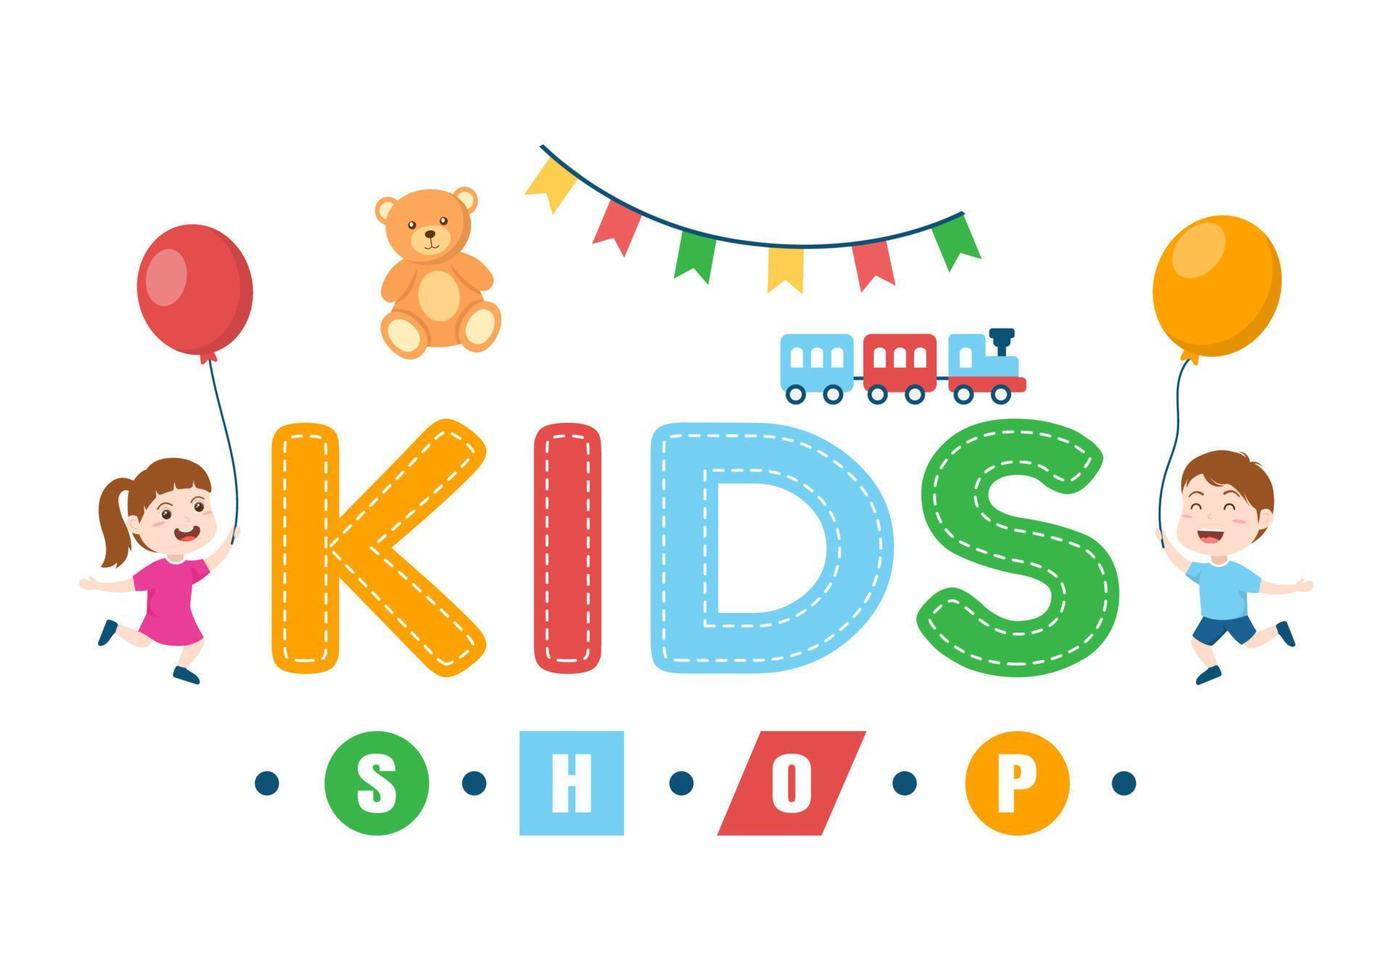 bambini negozio edificio modello mano disegnato cartone animato piatto stile illustrazione con bambini attrezzatura come come Abiti o giocattoli per shopping concetto vettore